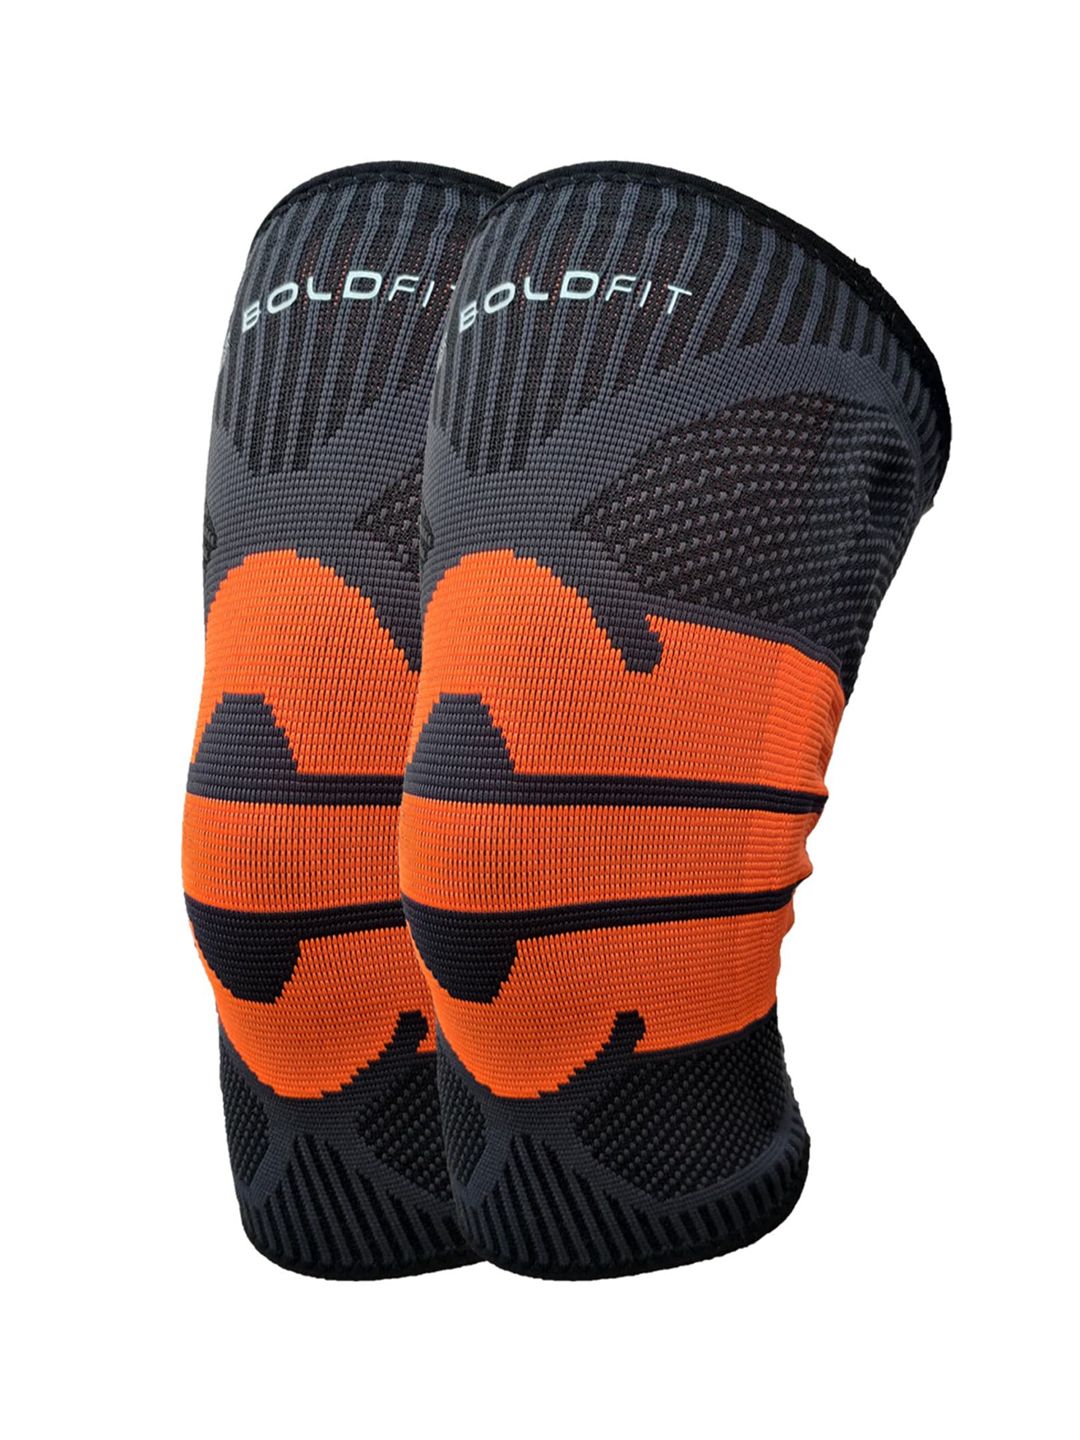 BOLDFIT Unisex Orange Self Design  Knee Support Price in India